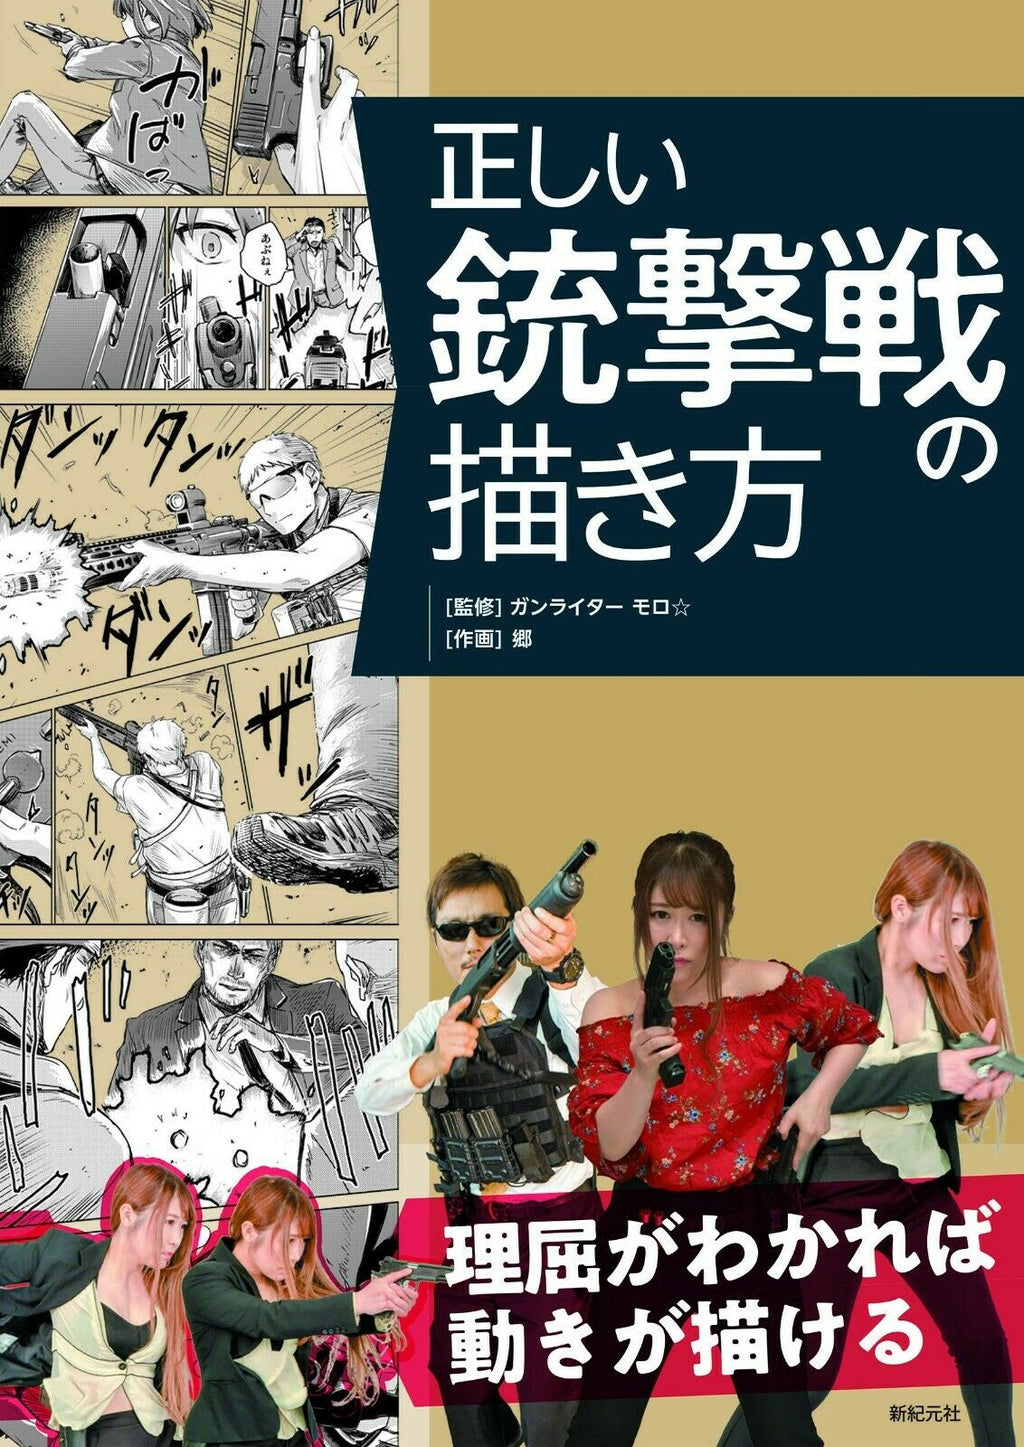 NEW' How To Draw Gunbattle | JAPAN Art Guide Book Manga gunfight